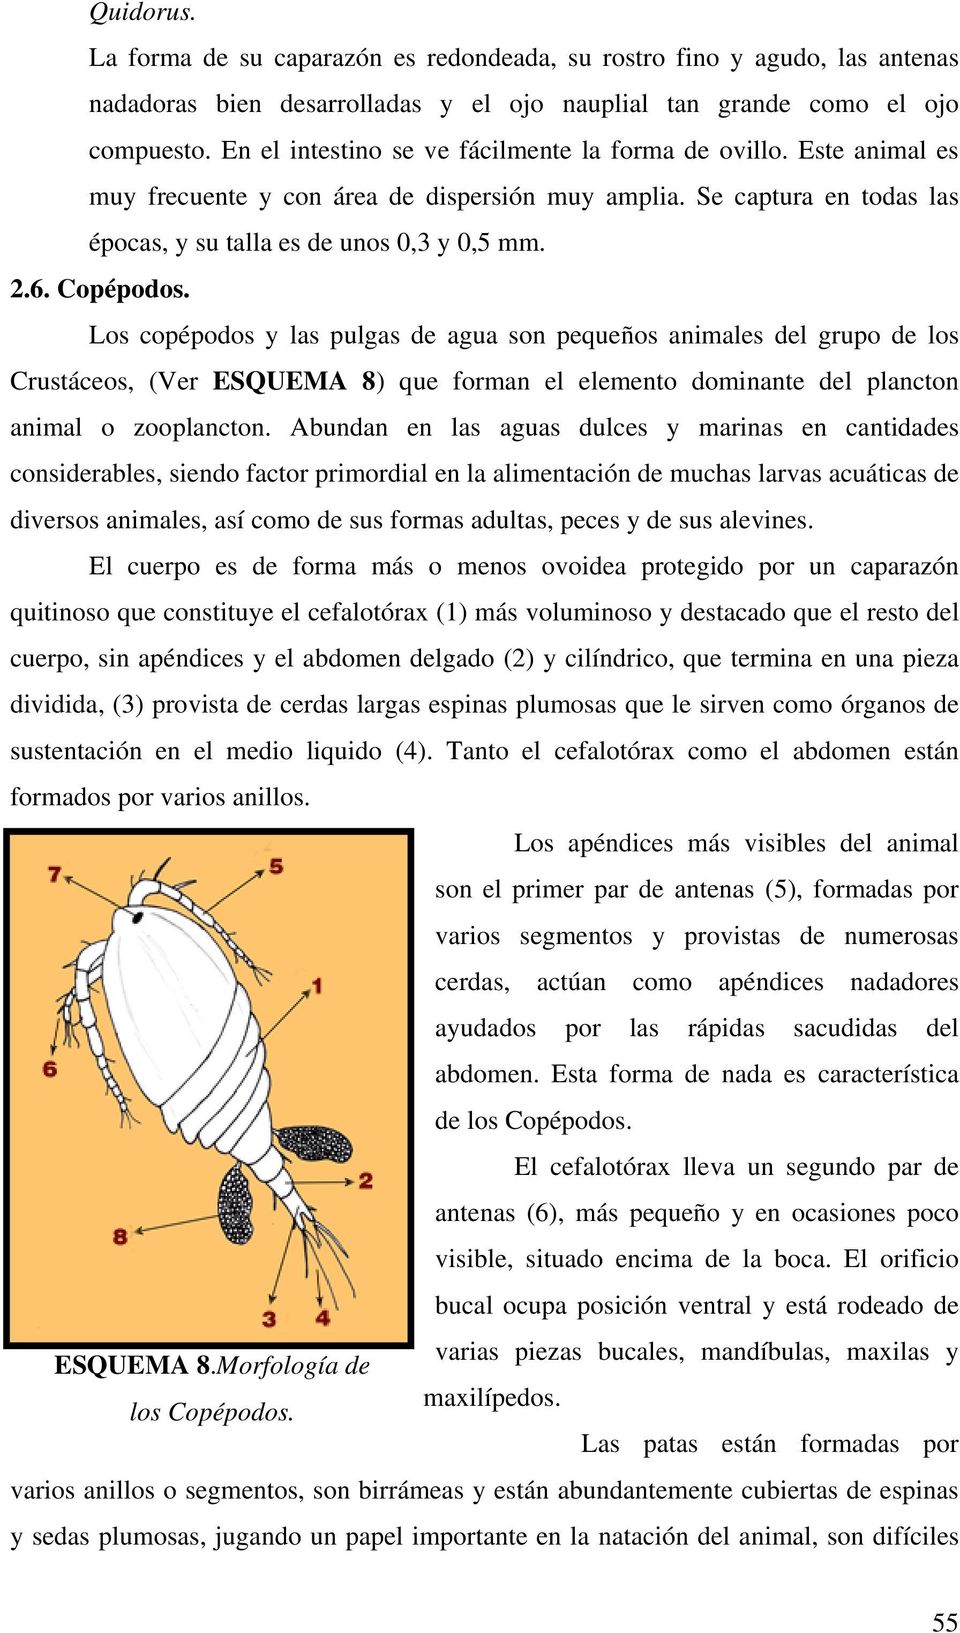 Copépodos. Los copépodos y las pulgas de agua son pequeños animales del grupo de los Crustáceos, (Ver ESQUEMA 8) que forman el elemento dominante del plancton animal o zooplancton.